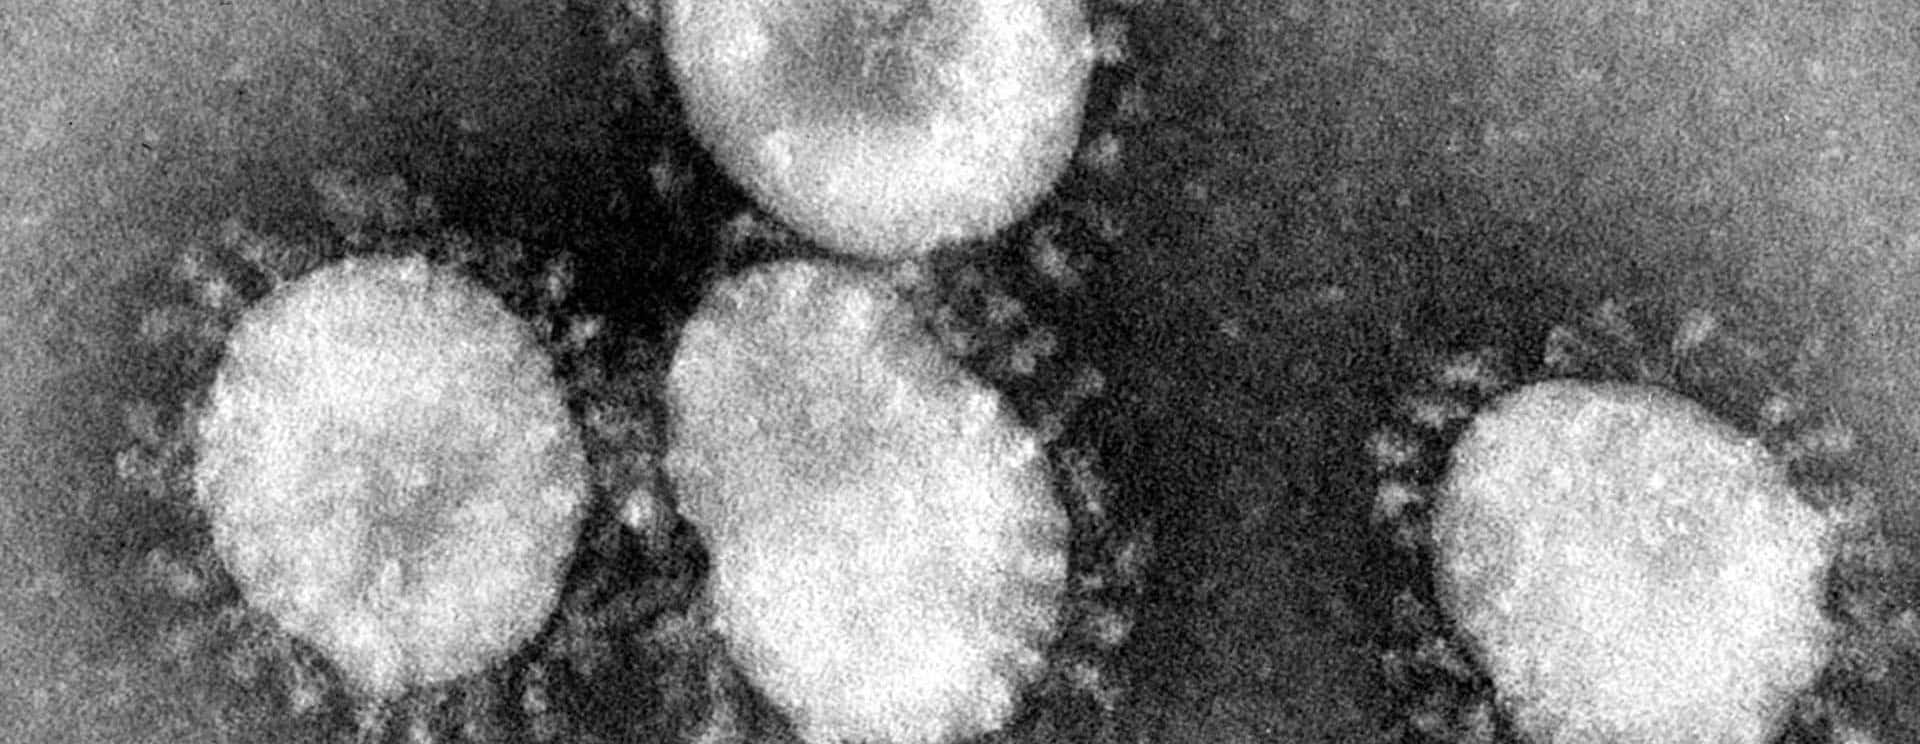 coronaviruses-jpg-19